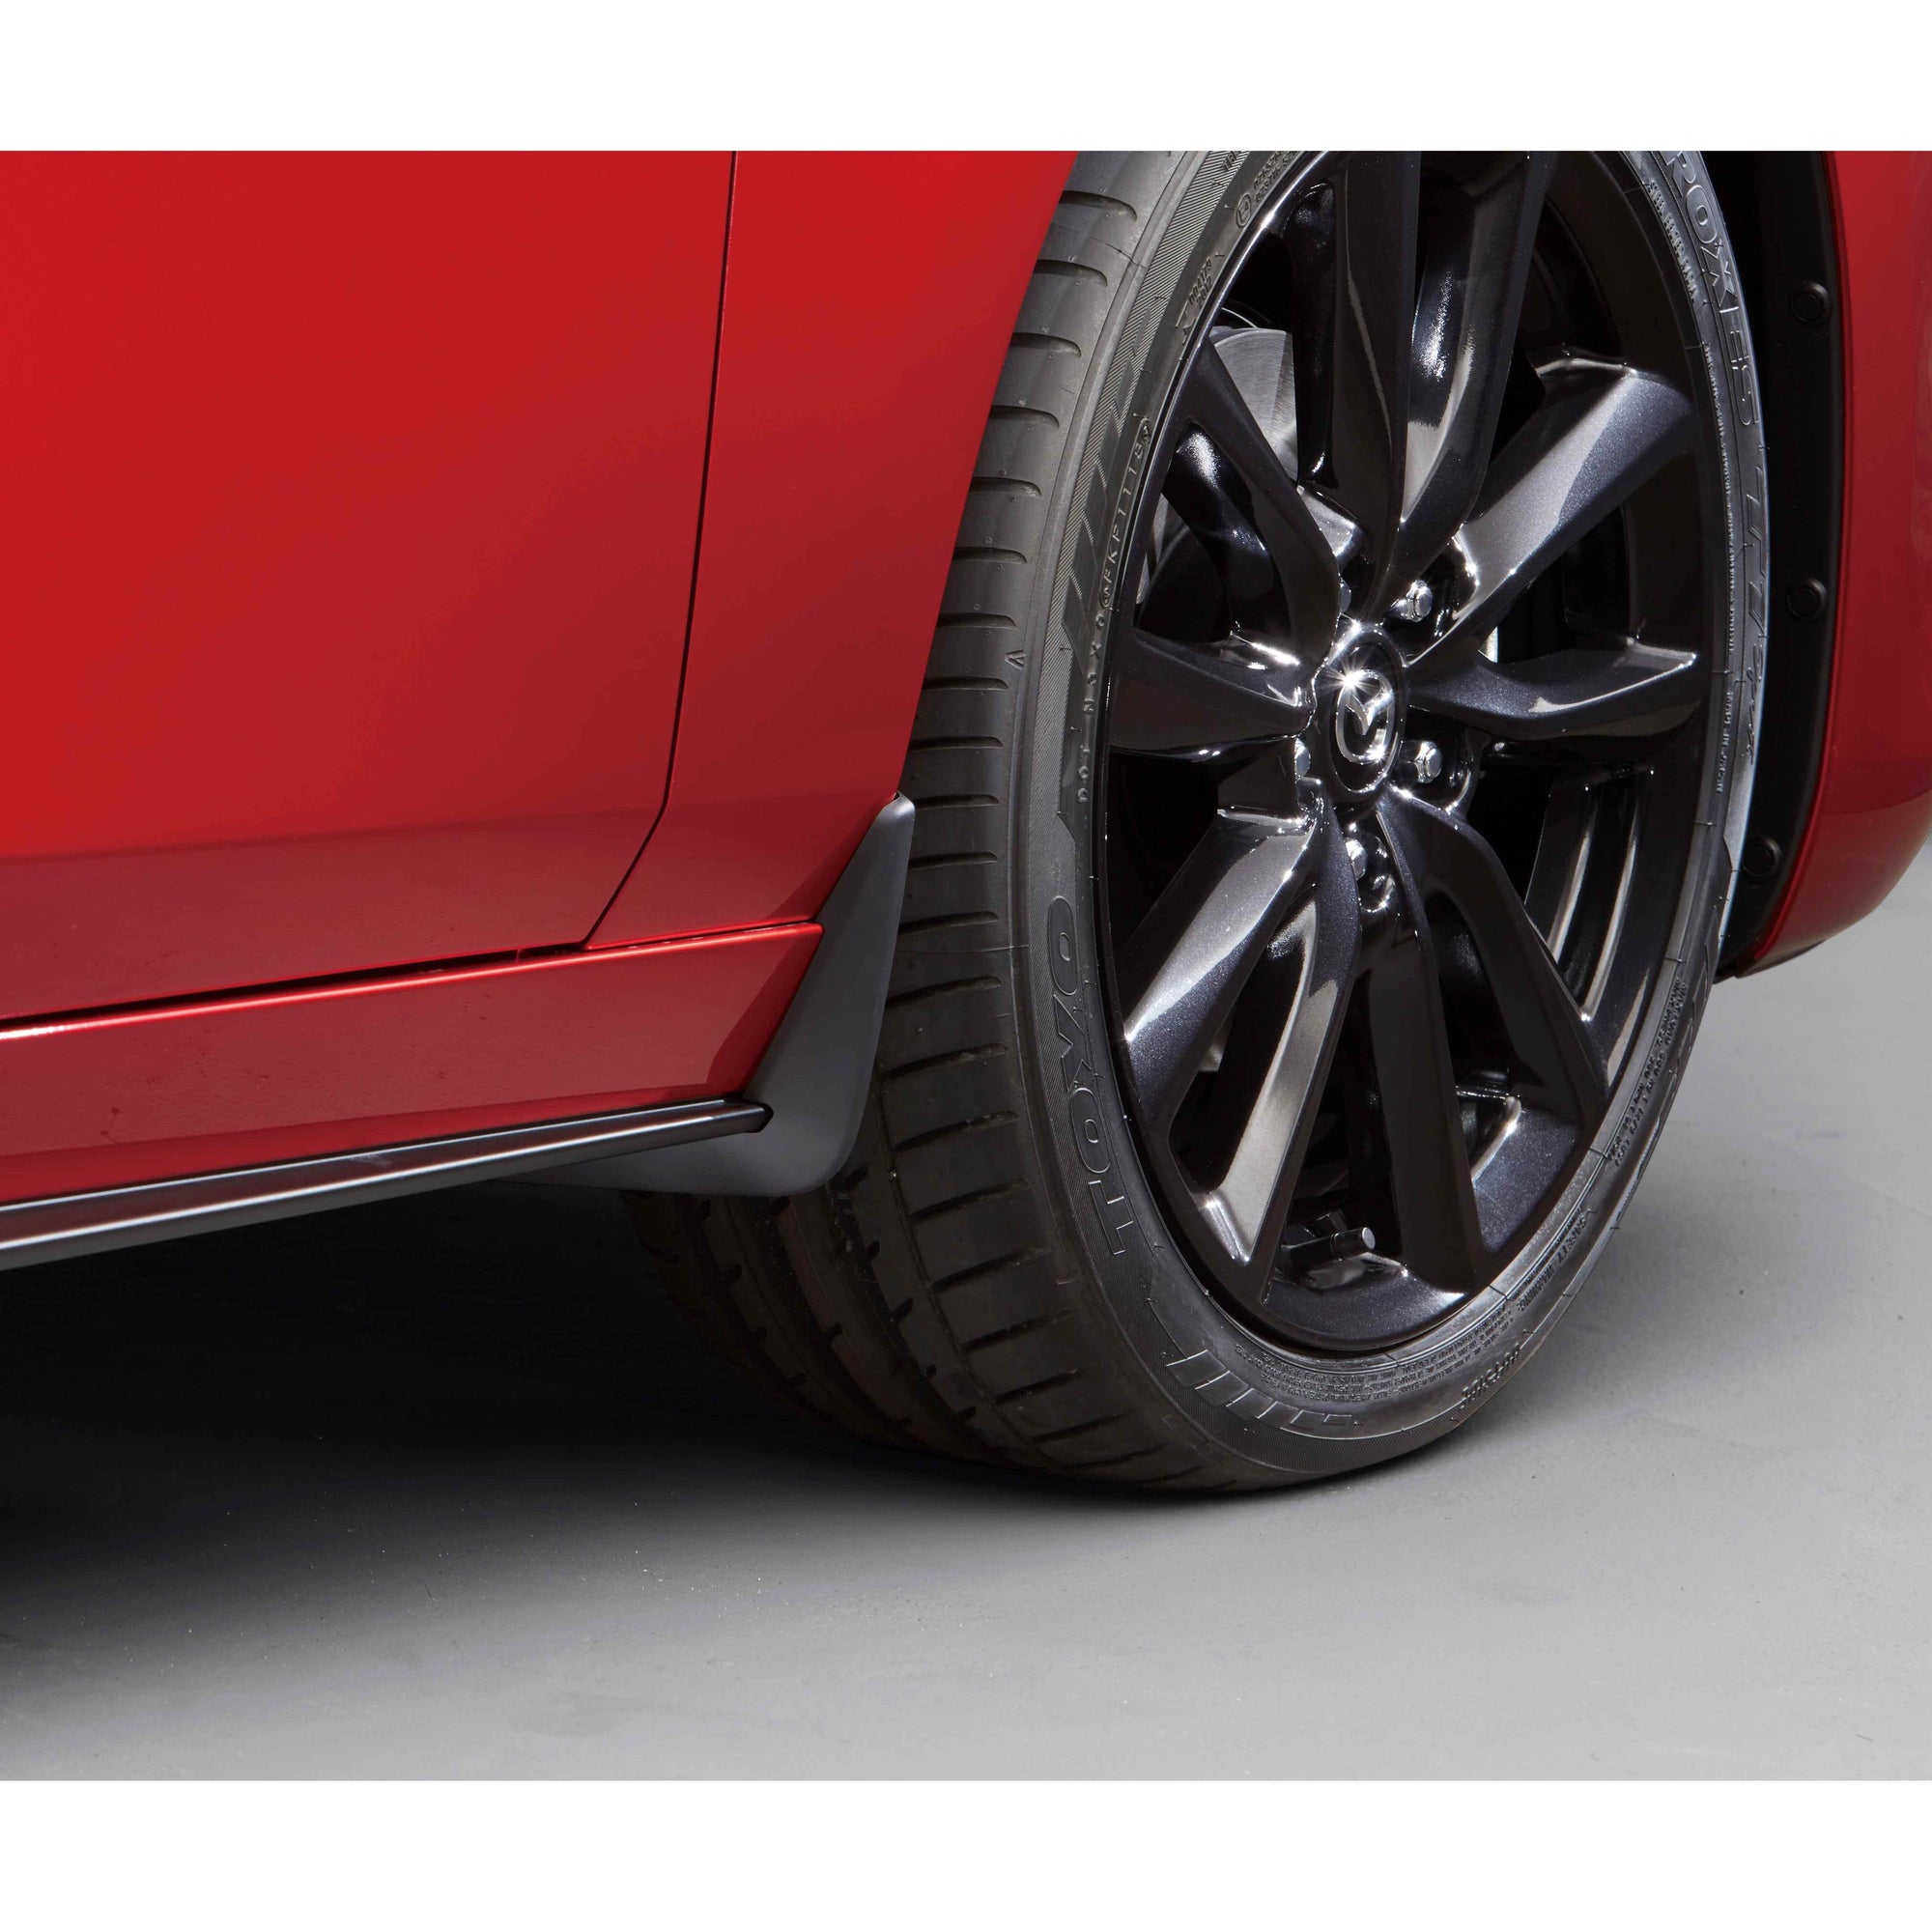 Mud Guards, Front & Rear | Mazda3 Hatchback (2019-2022)